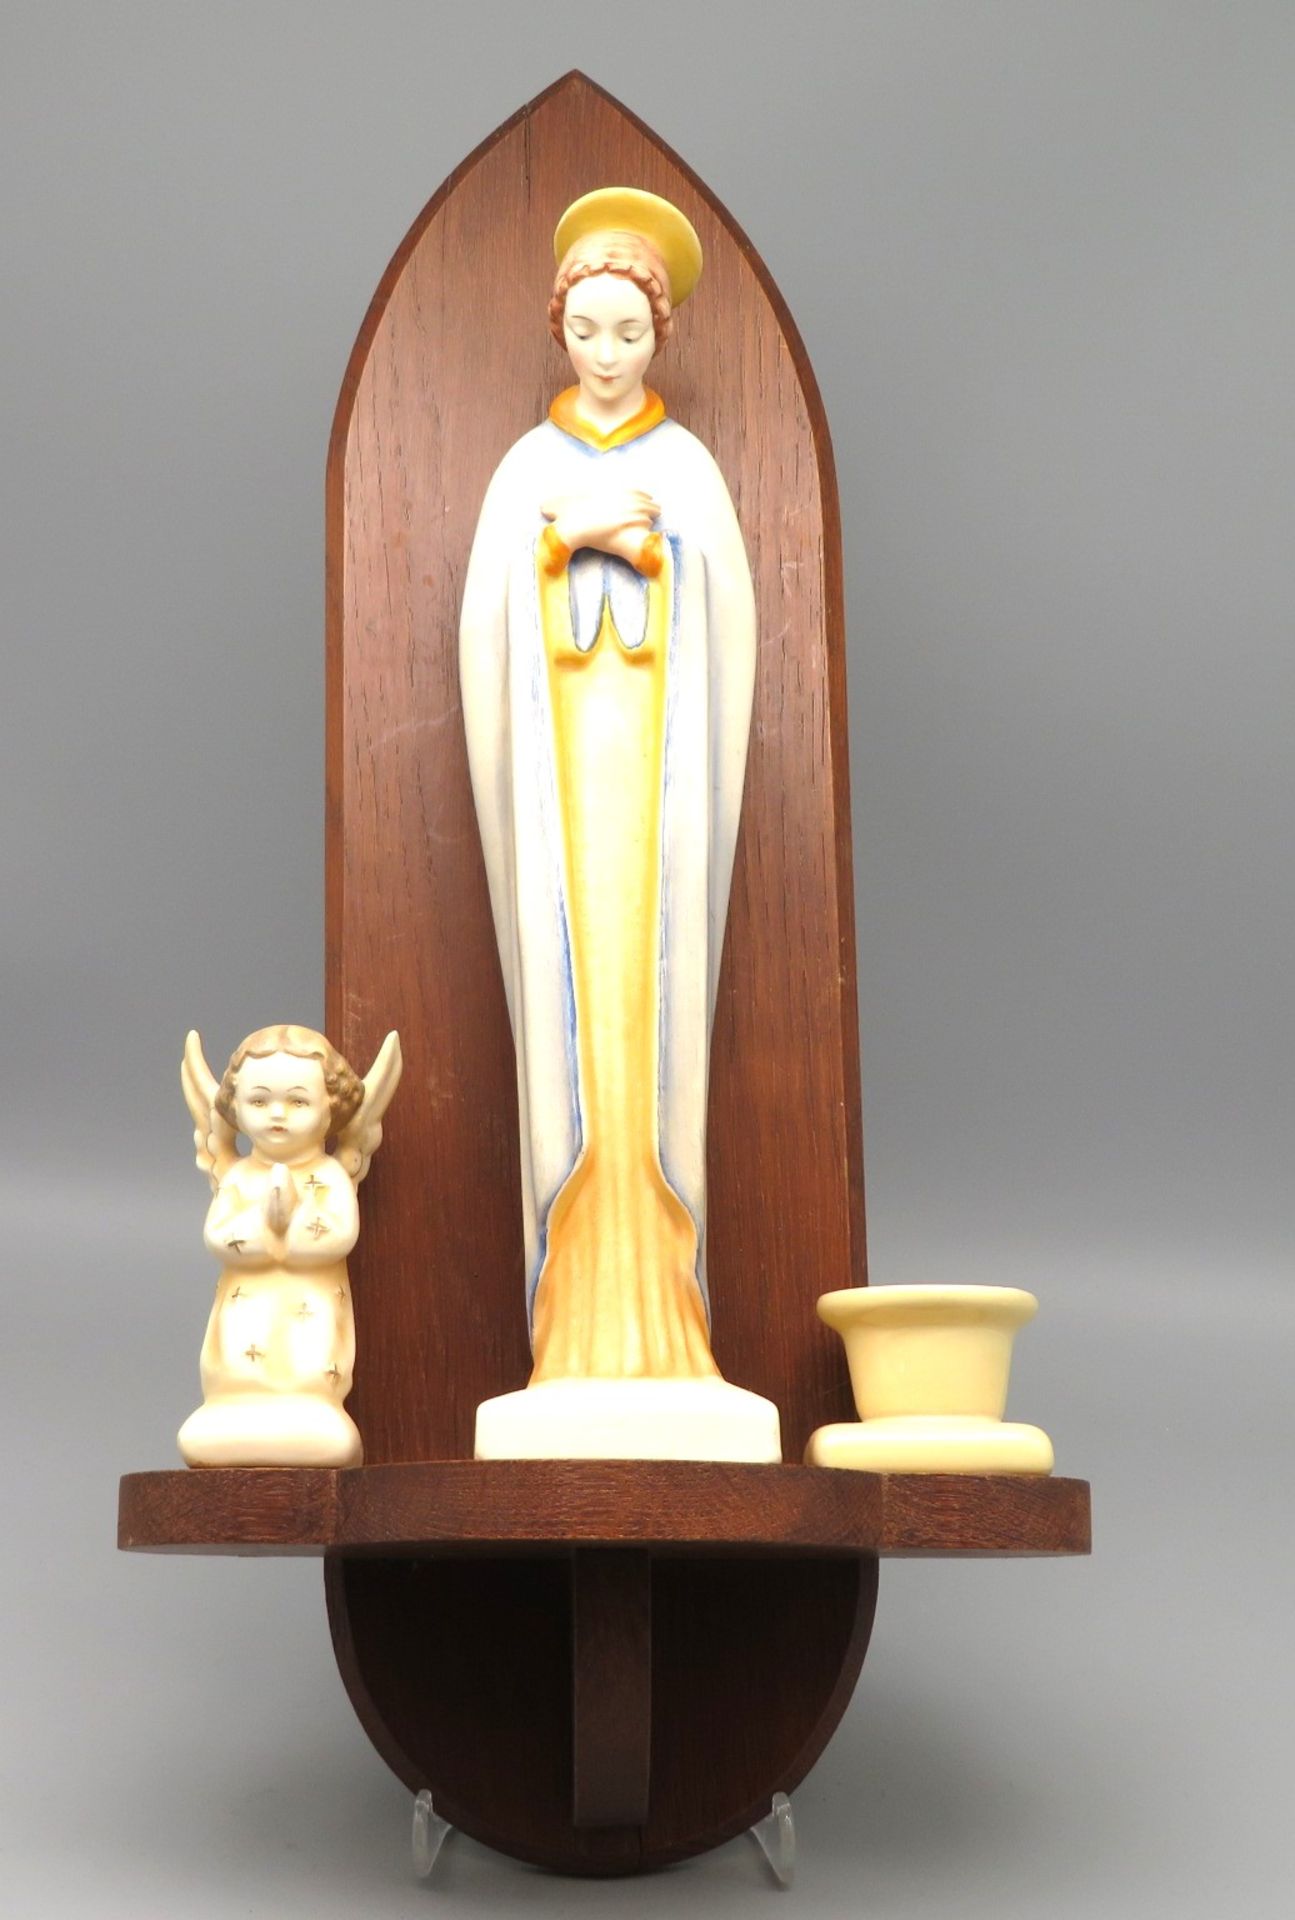 3 teiliges Konvolut, bestehend aus Madonna, Putto und Kerzenleuchter, wohl Goebel, Keramik mit poly